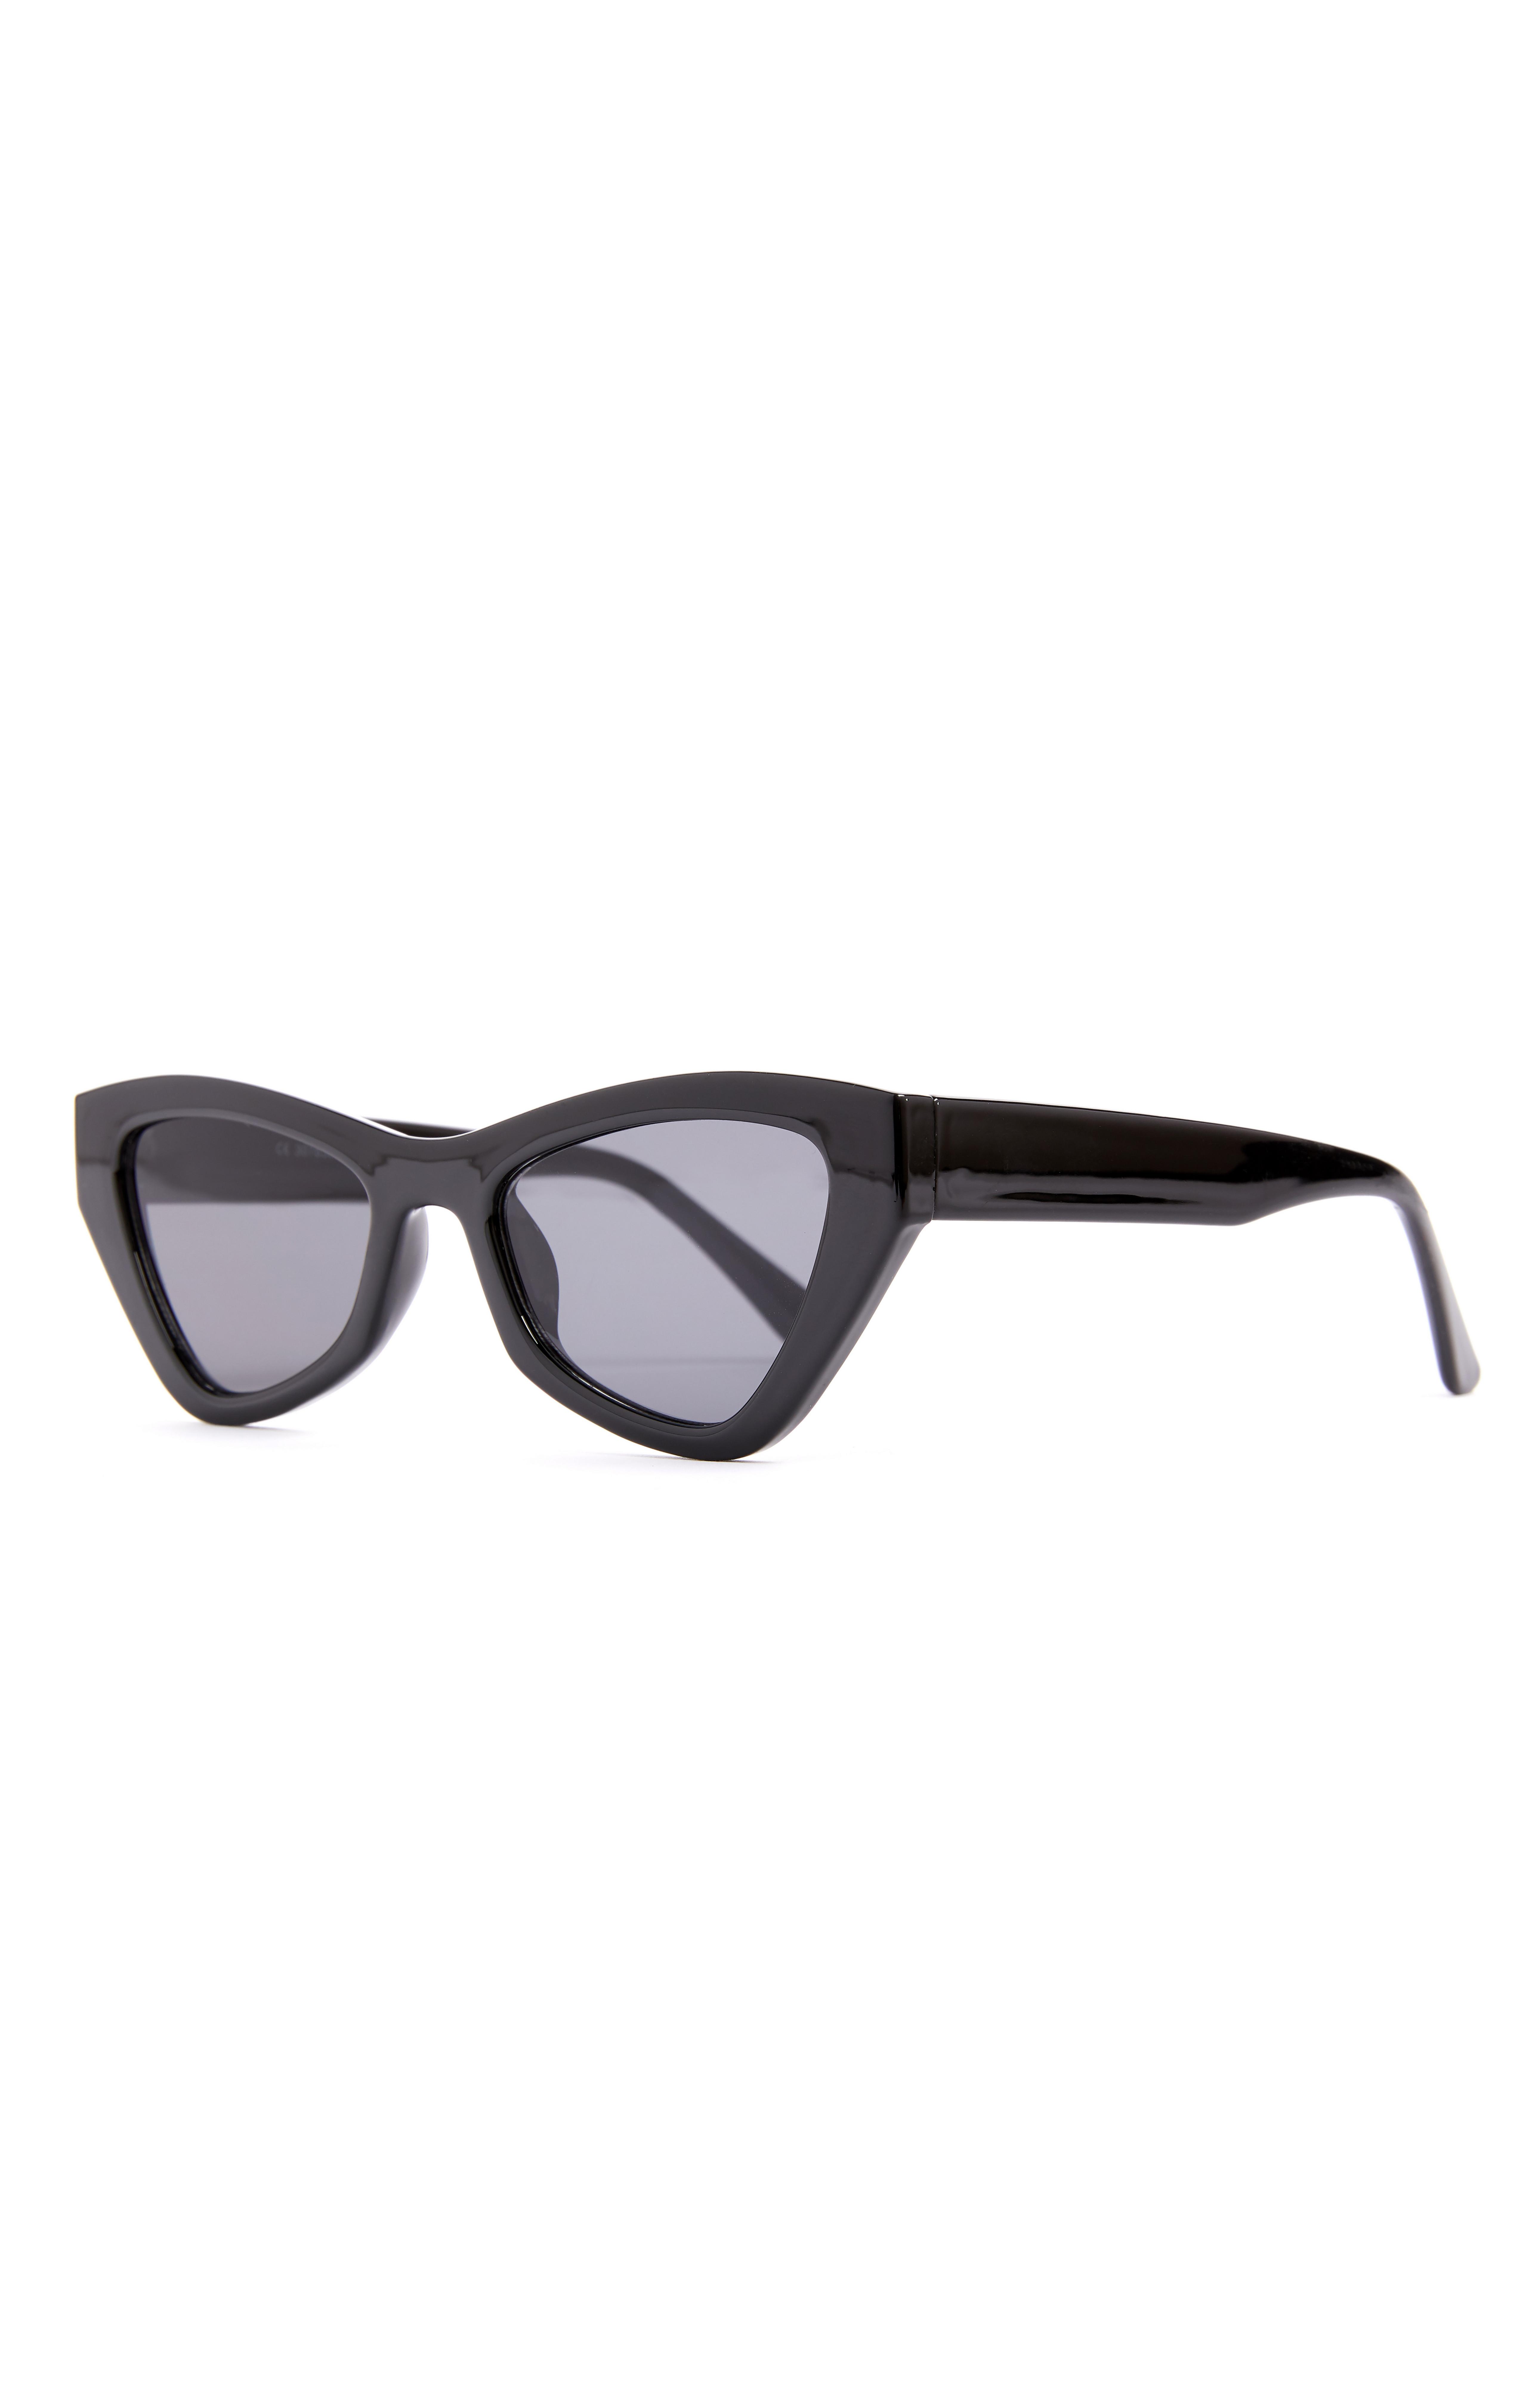 Gafas de sol grandes y angulares negras estilo ojos de gato | Gafas de sol para mujer | Accesorios mujer | Nuestra línea de moda femenina | Todos los productos Primark | Primark España